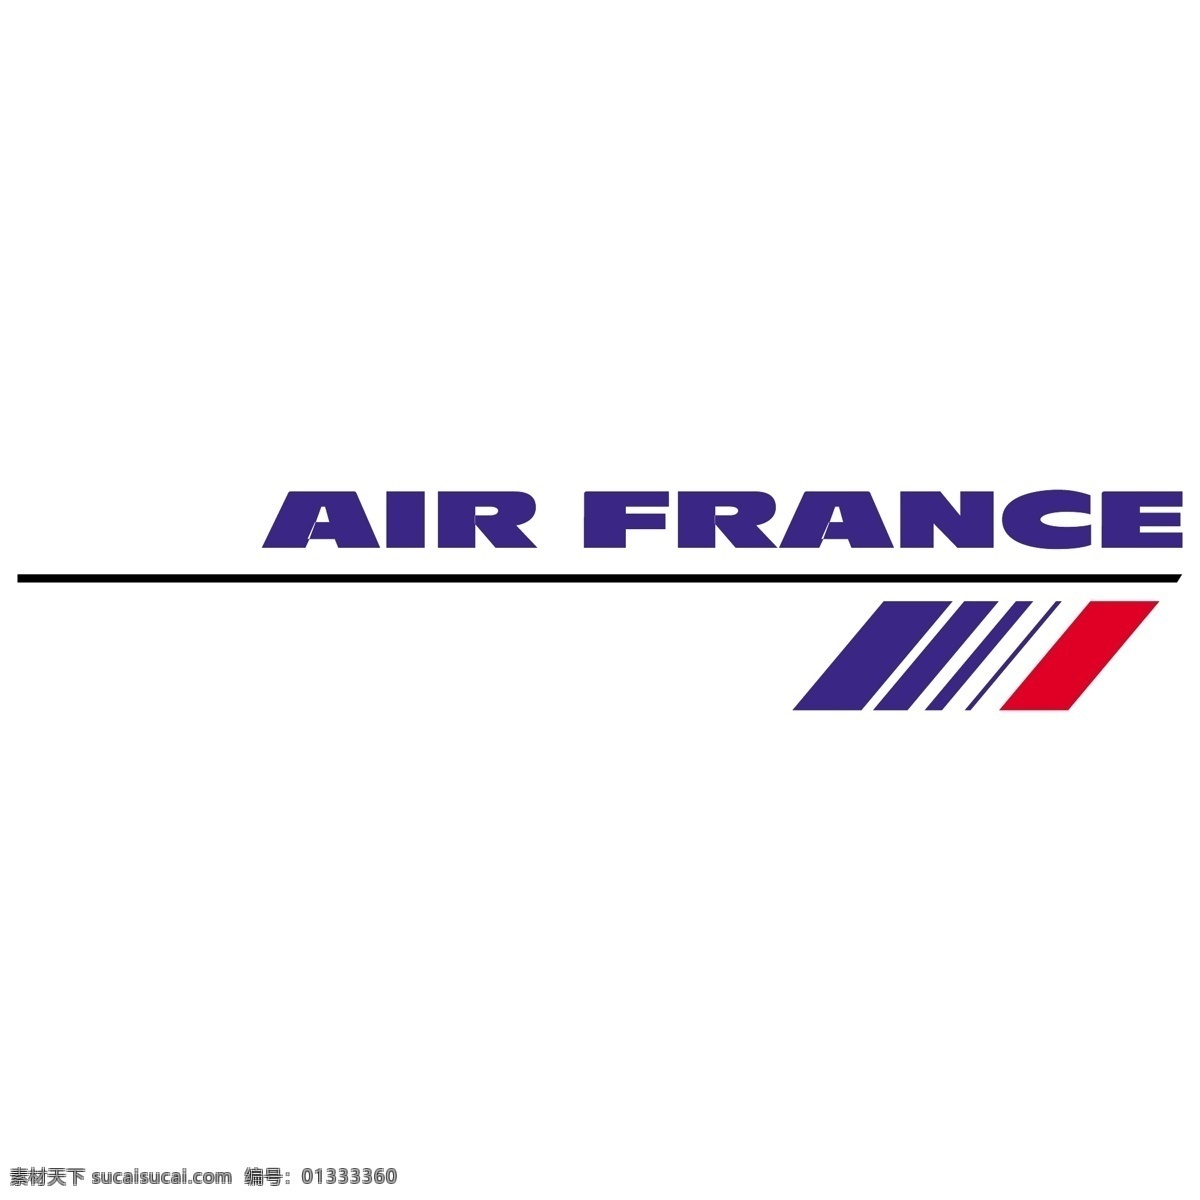 法国航空公司 自由 法国 航空 标志 法航 psd源文件 logo设计